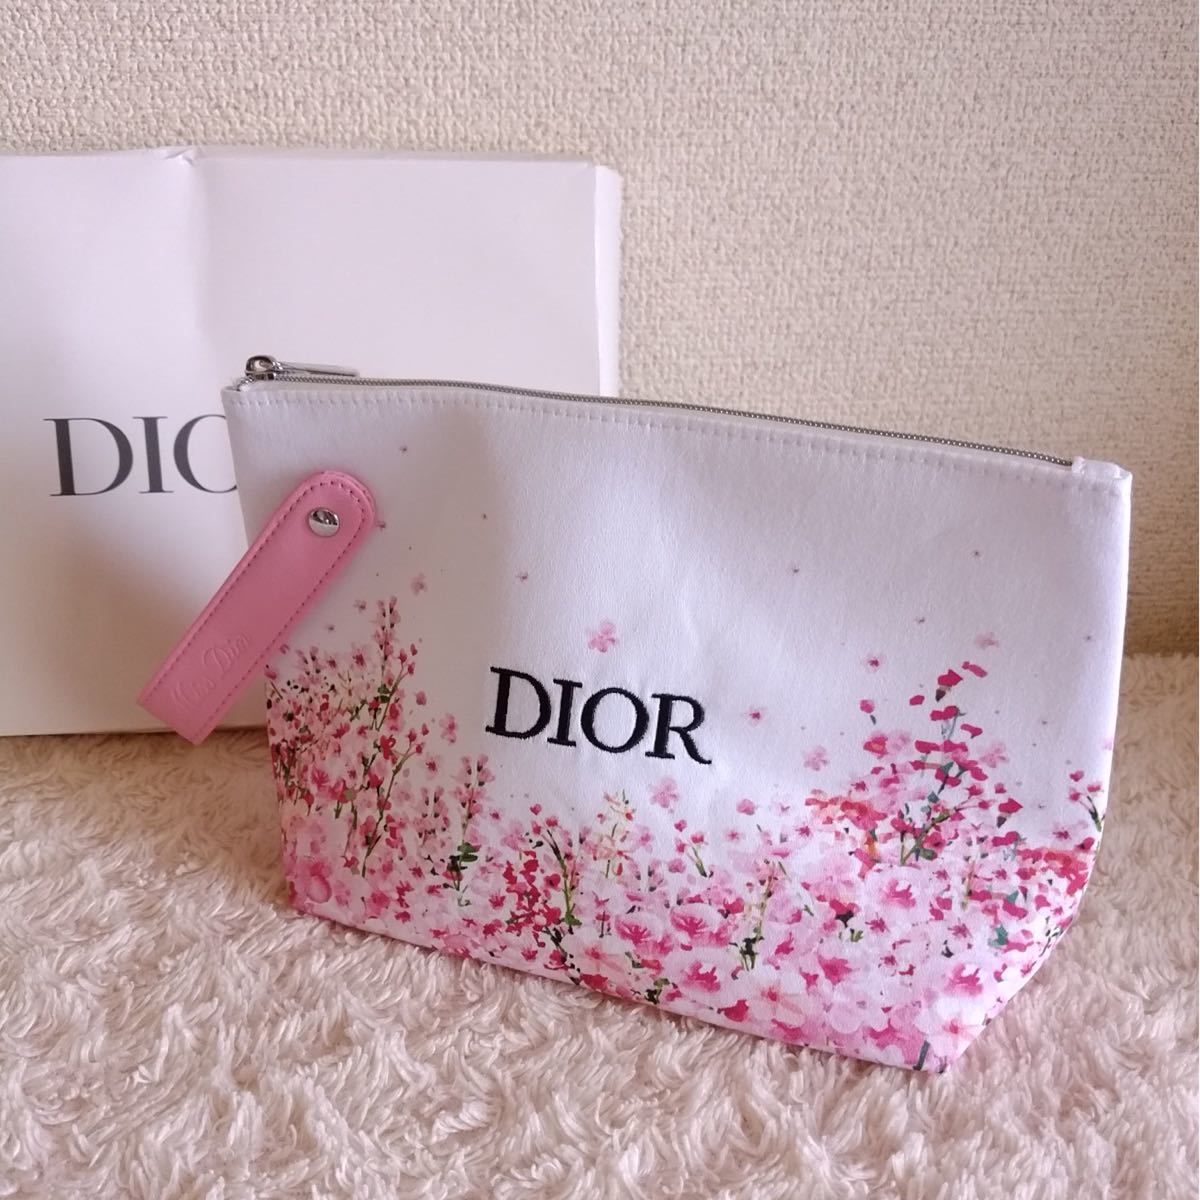 新品 ディオール Dior ポーチ 限定 花柄 ピンク ミスディオール フレグランス フラワー 桜 バレンタイン限定 ノベルティ